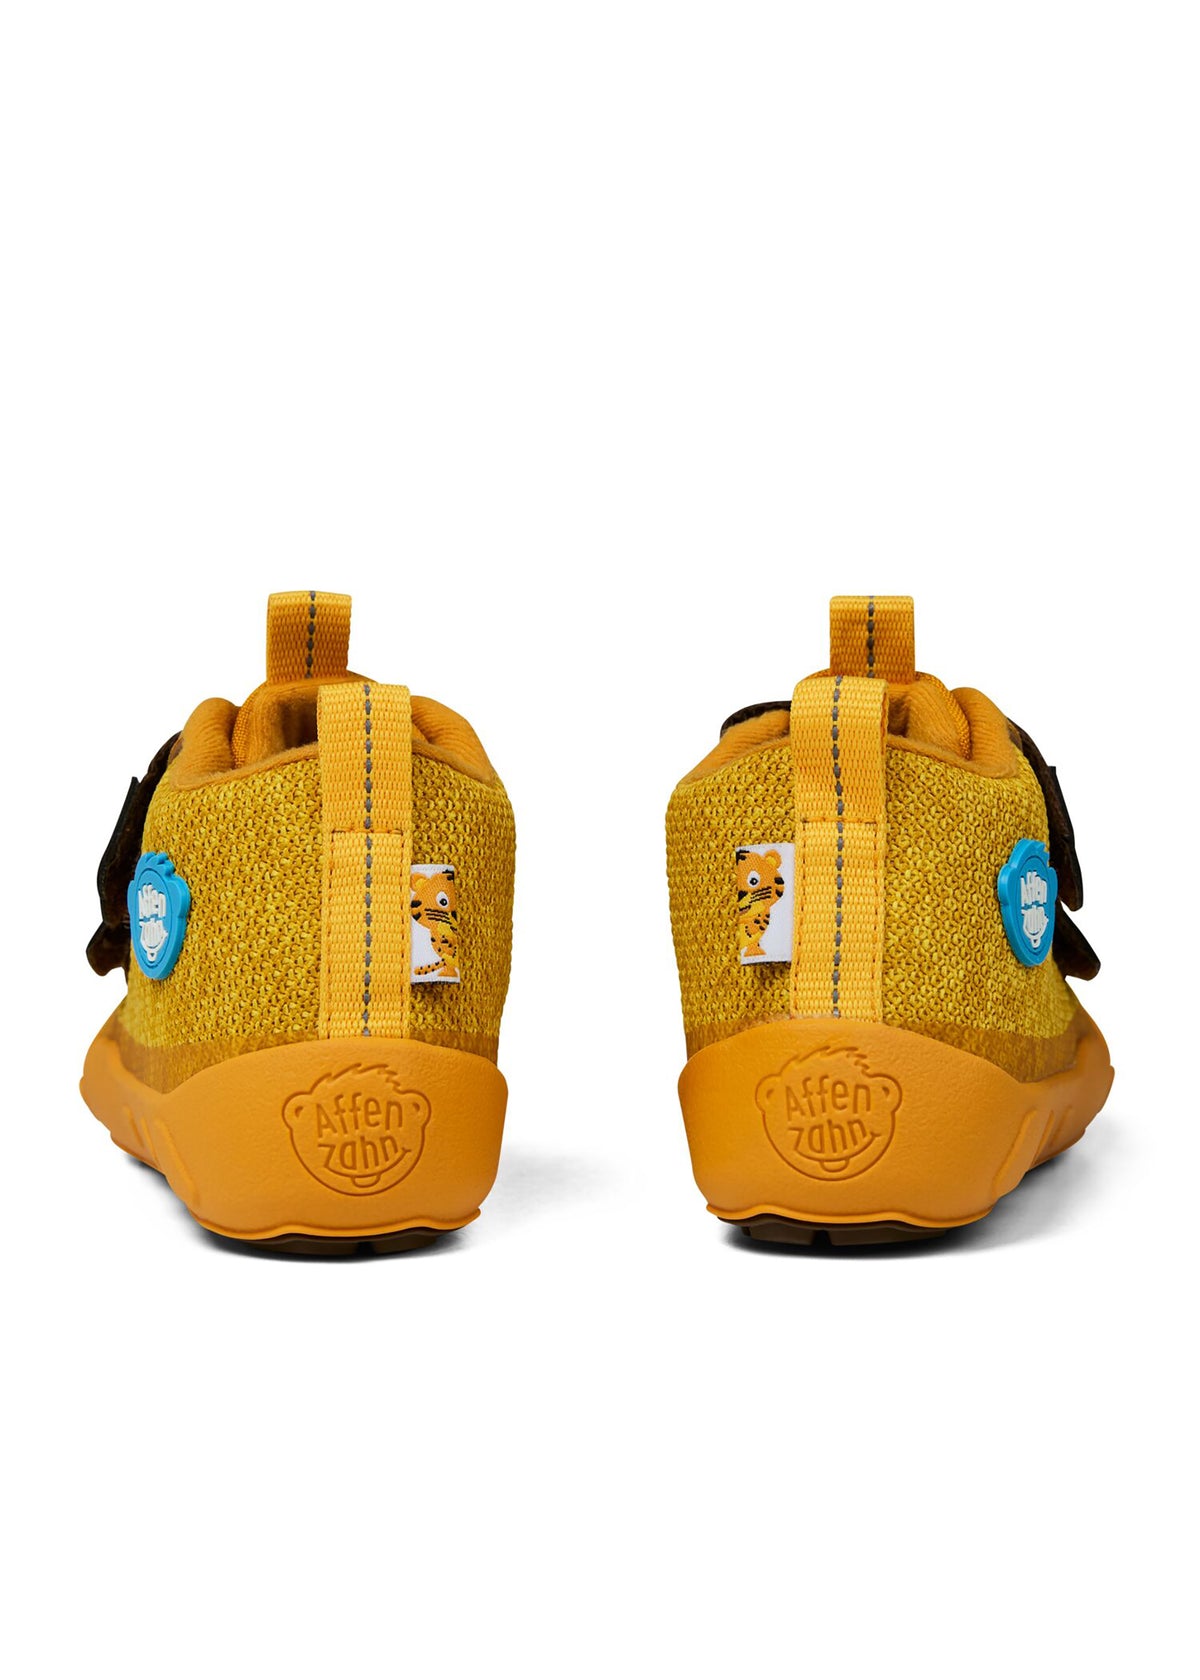 Lasten paljasjalkakengät - Happy Knit Tiger, välikausikengät TEX-kalvolla - keltainen